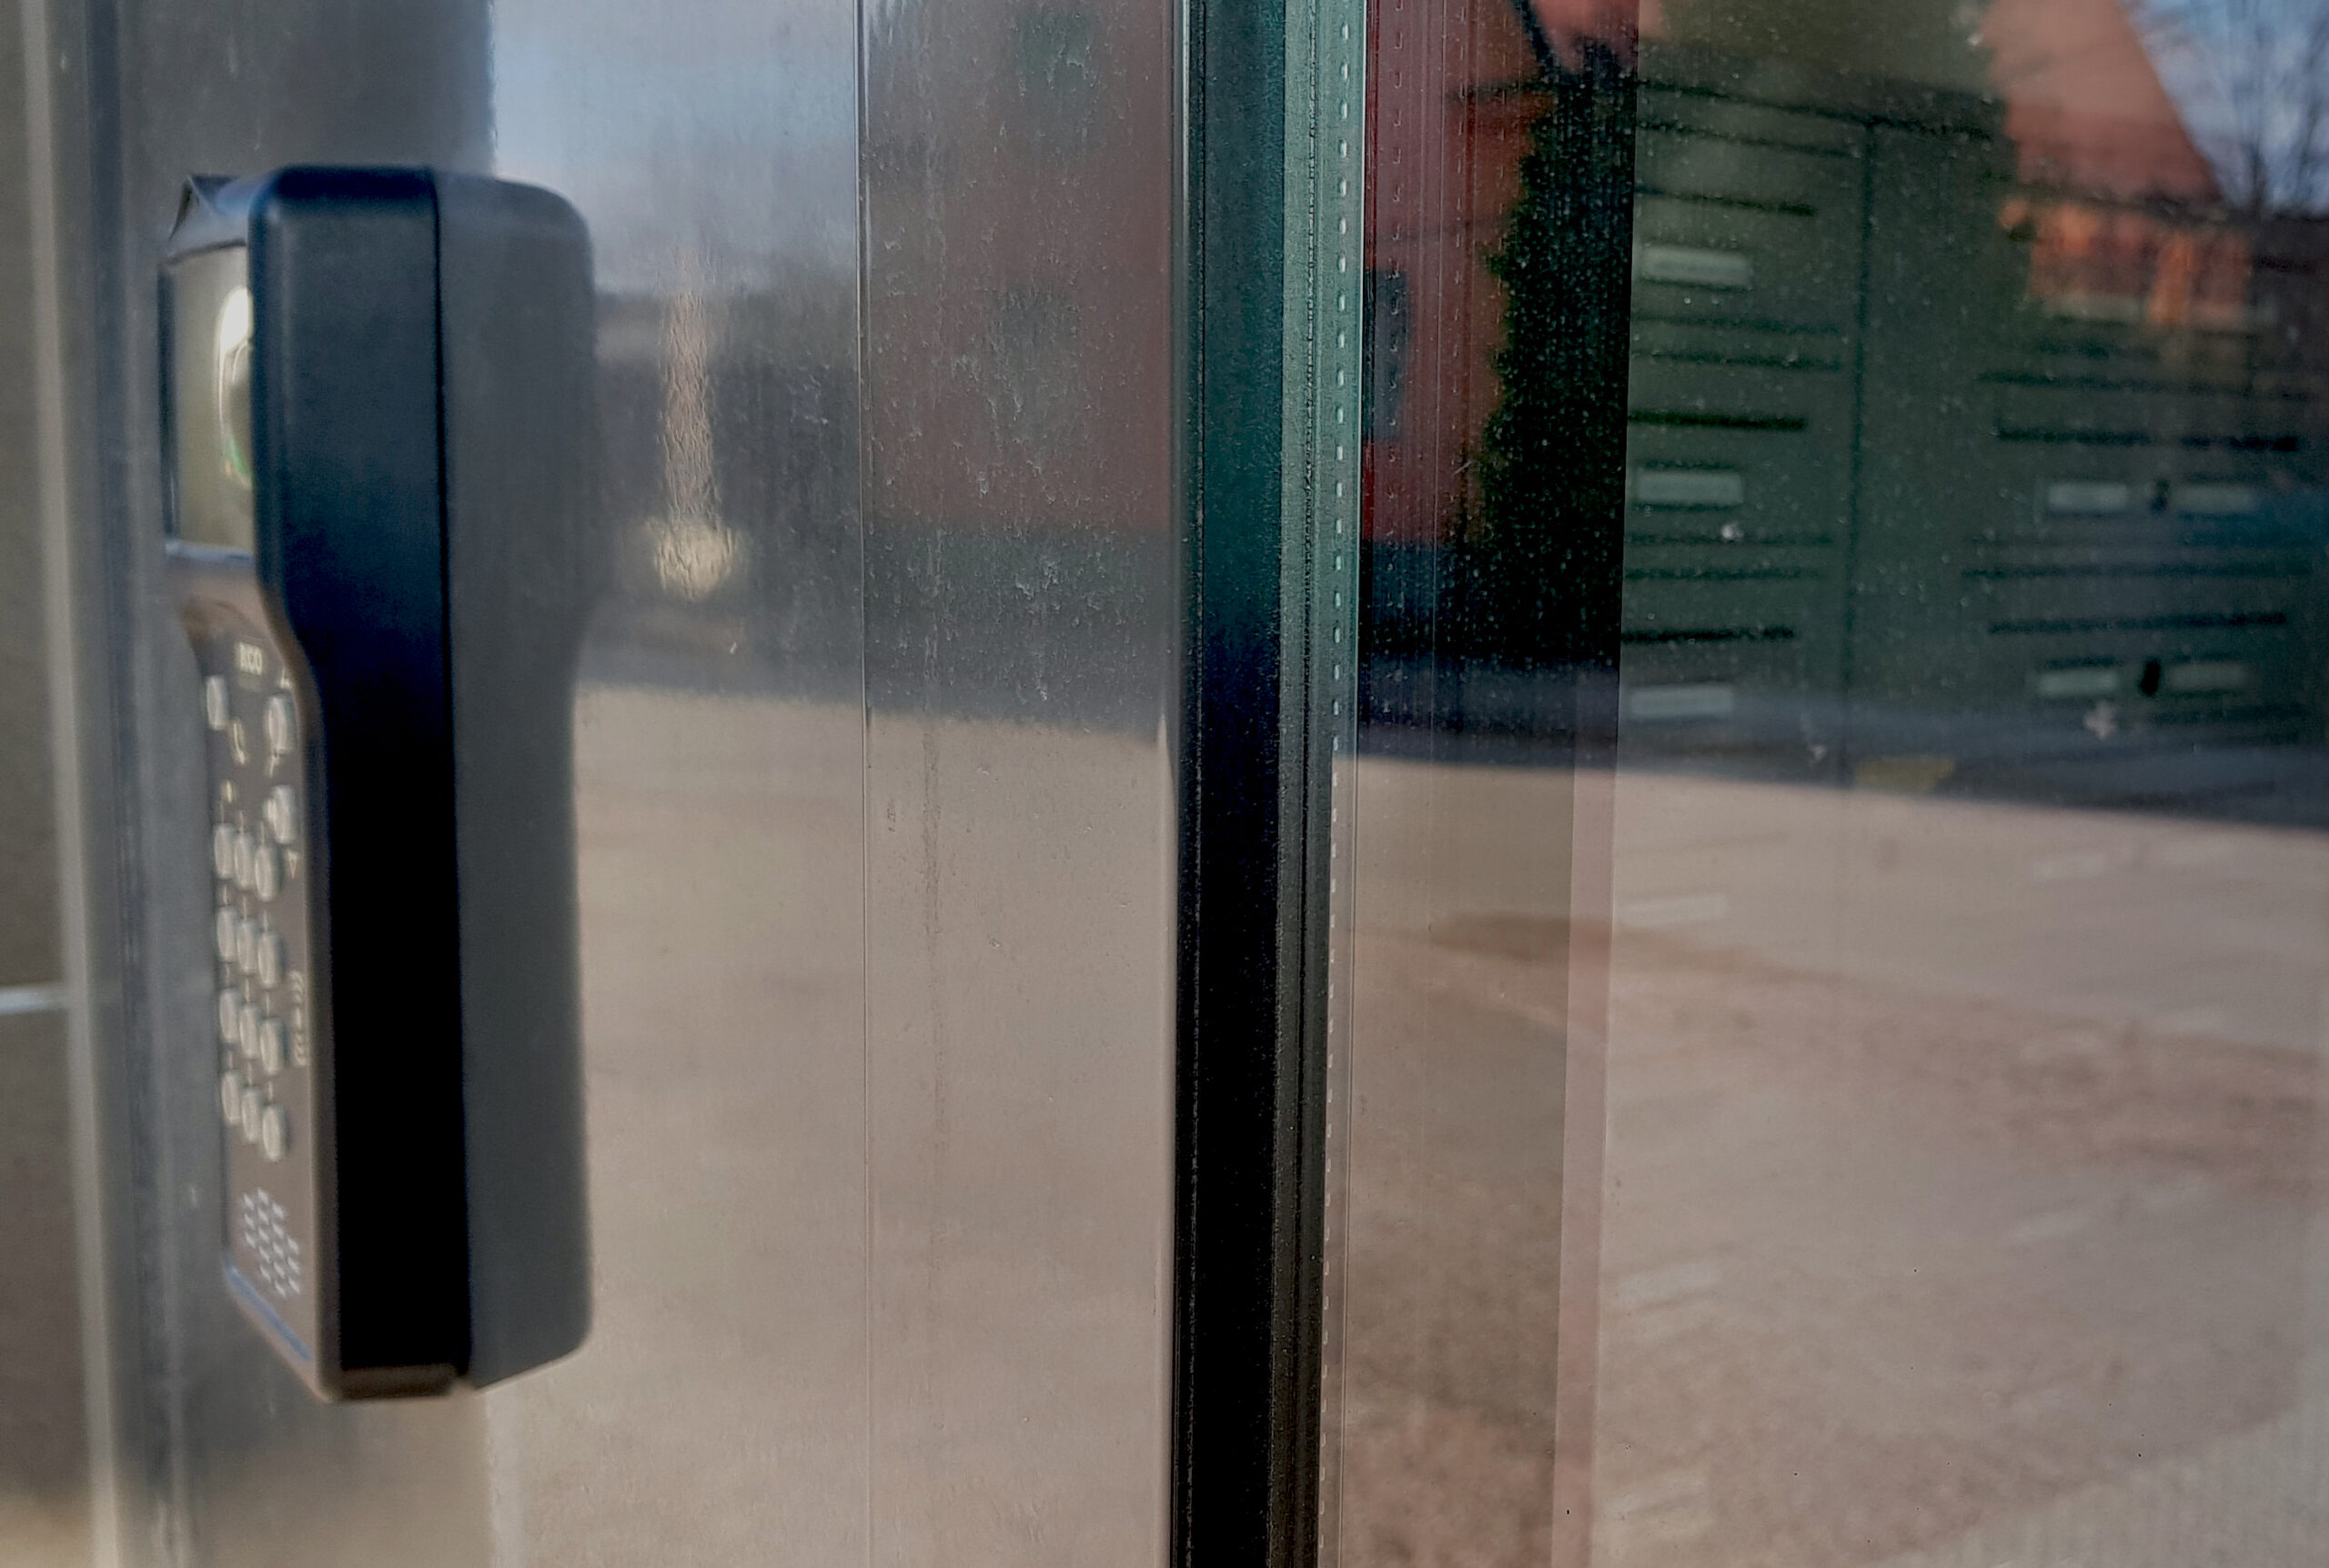 Ett foto genom en ruta där ett hus reflekteras och en taggläsare med kod syns i förgrunden. Innan för rutan syns postlådorna i ett lägenhetshus.